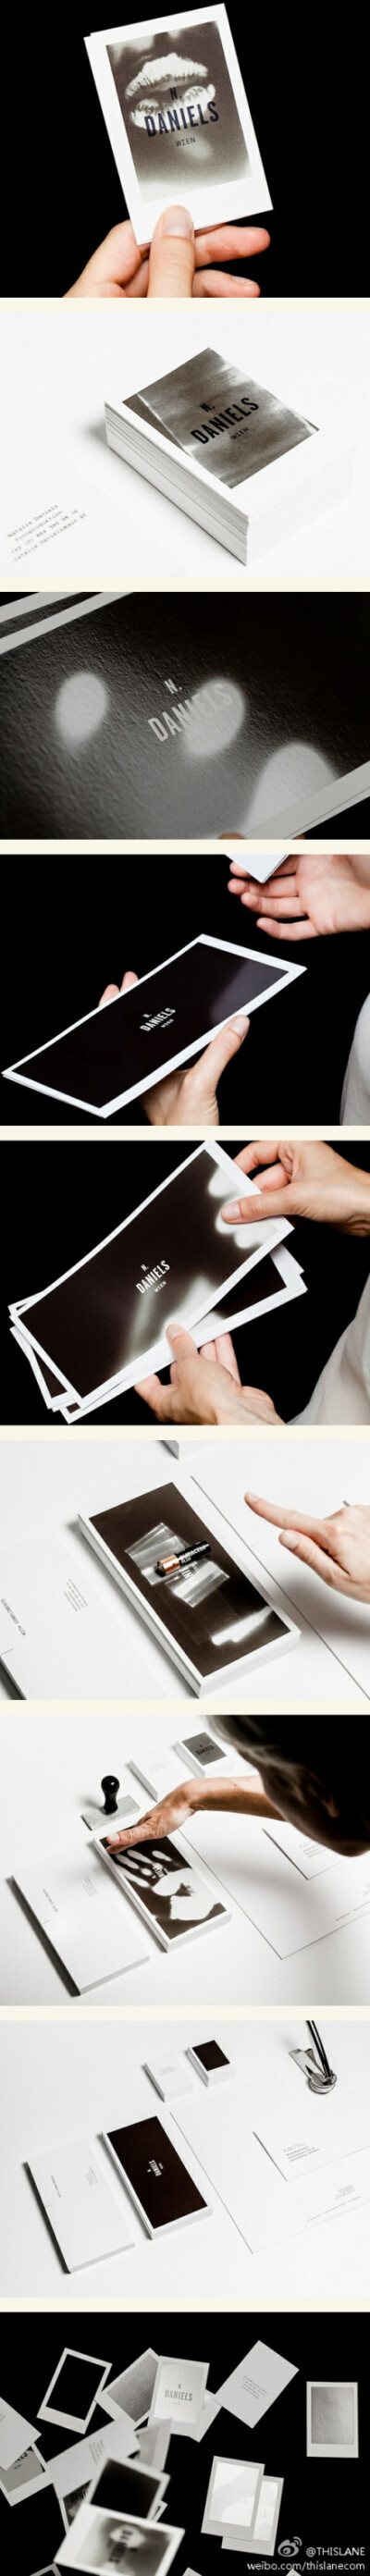 奥地利维也纳设计师Bureau Rabensteiner 设计的这款超级简洁的黑白名片—N. Daniels，创意设计在于名片的黑色背景色区域具有“热感应”功能。在交换名片触碰时，体温会带给名片最独一无二的二次“设计” ，因此可以…